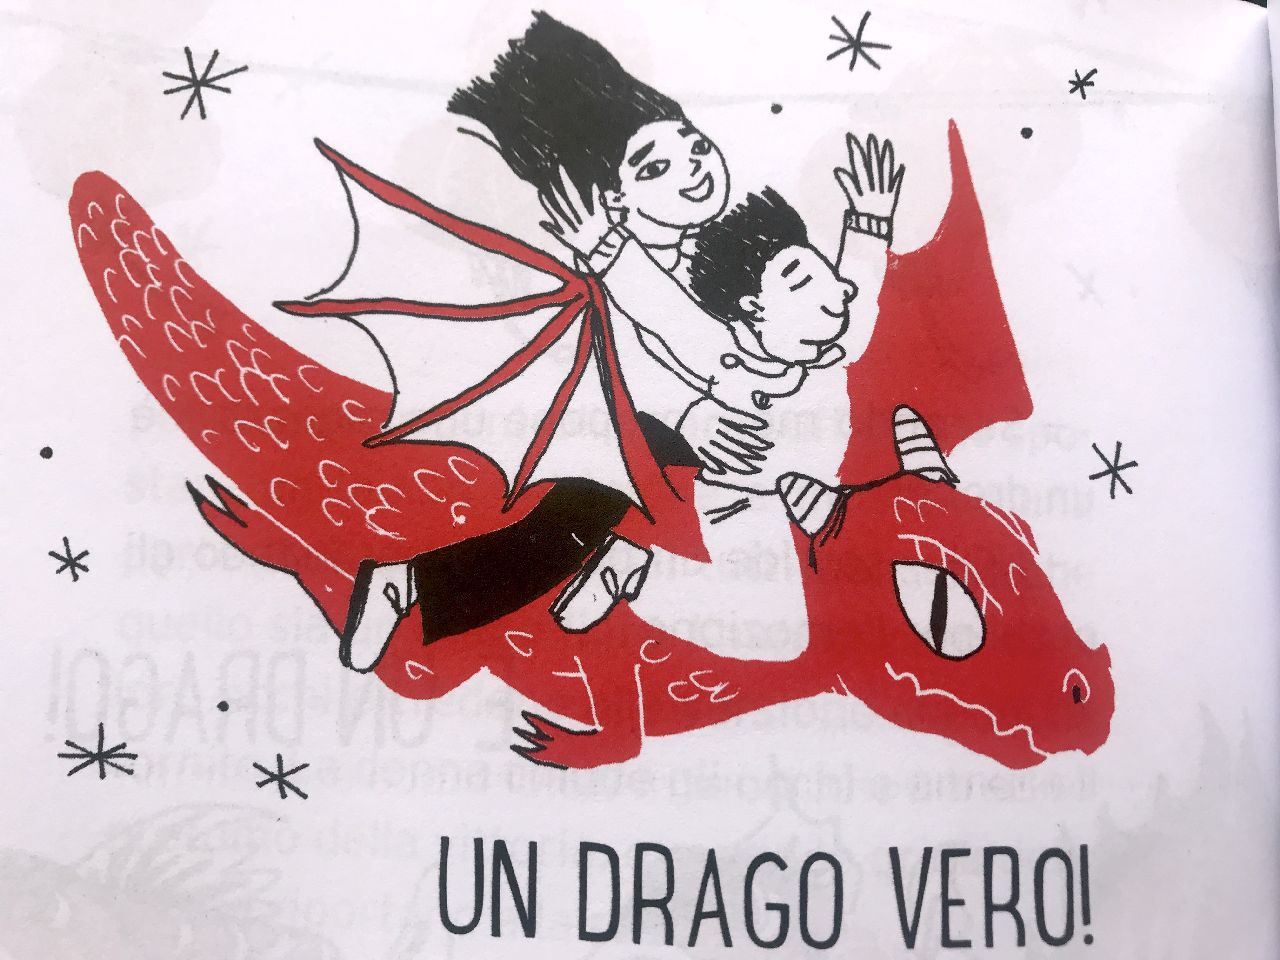 Sergio Badino - Nicolò Mingolini, Un drago in metropolitana, Coccole Books